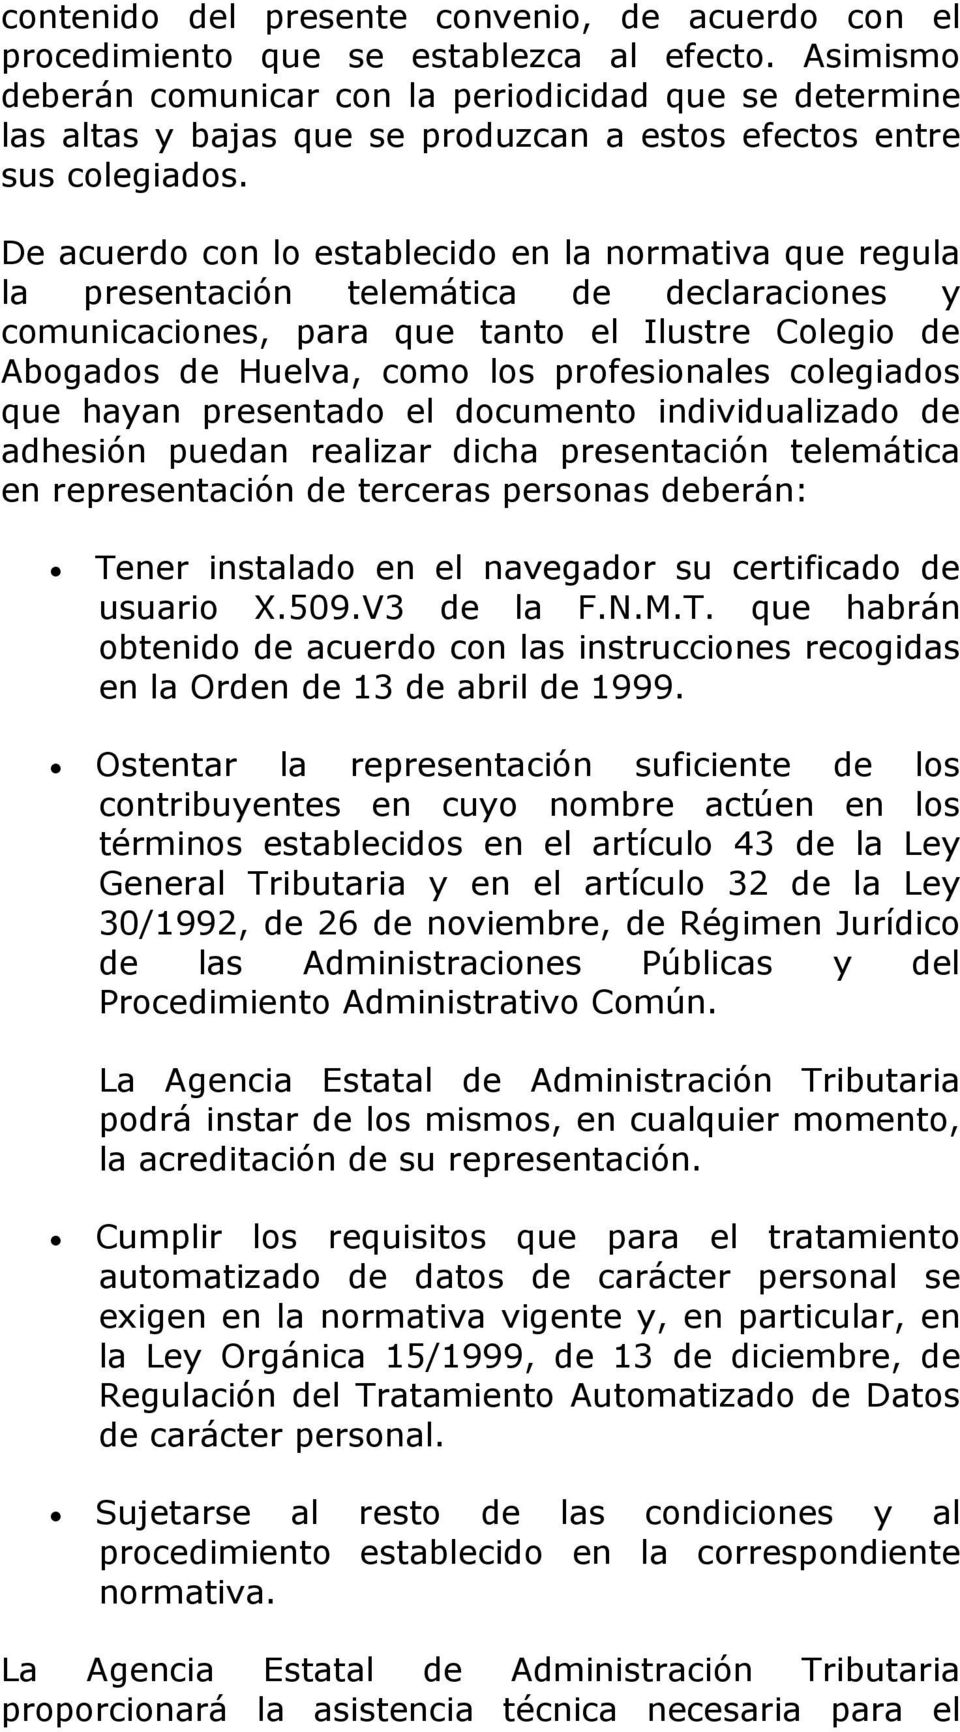 De acuerdo con lo establecido en la normativa que regula la presentación telemática de declaraciones y comunicaciones, para que tanto el Ilustre Colegio de Abogados de Huelva, como los profesionales